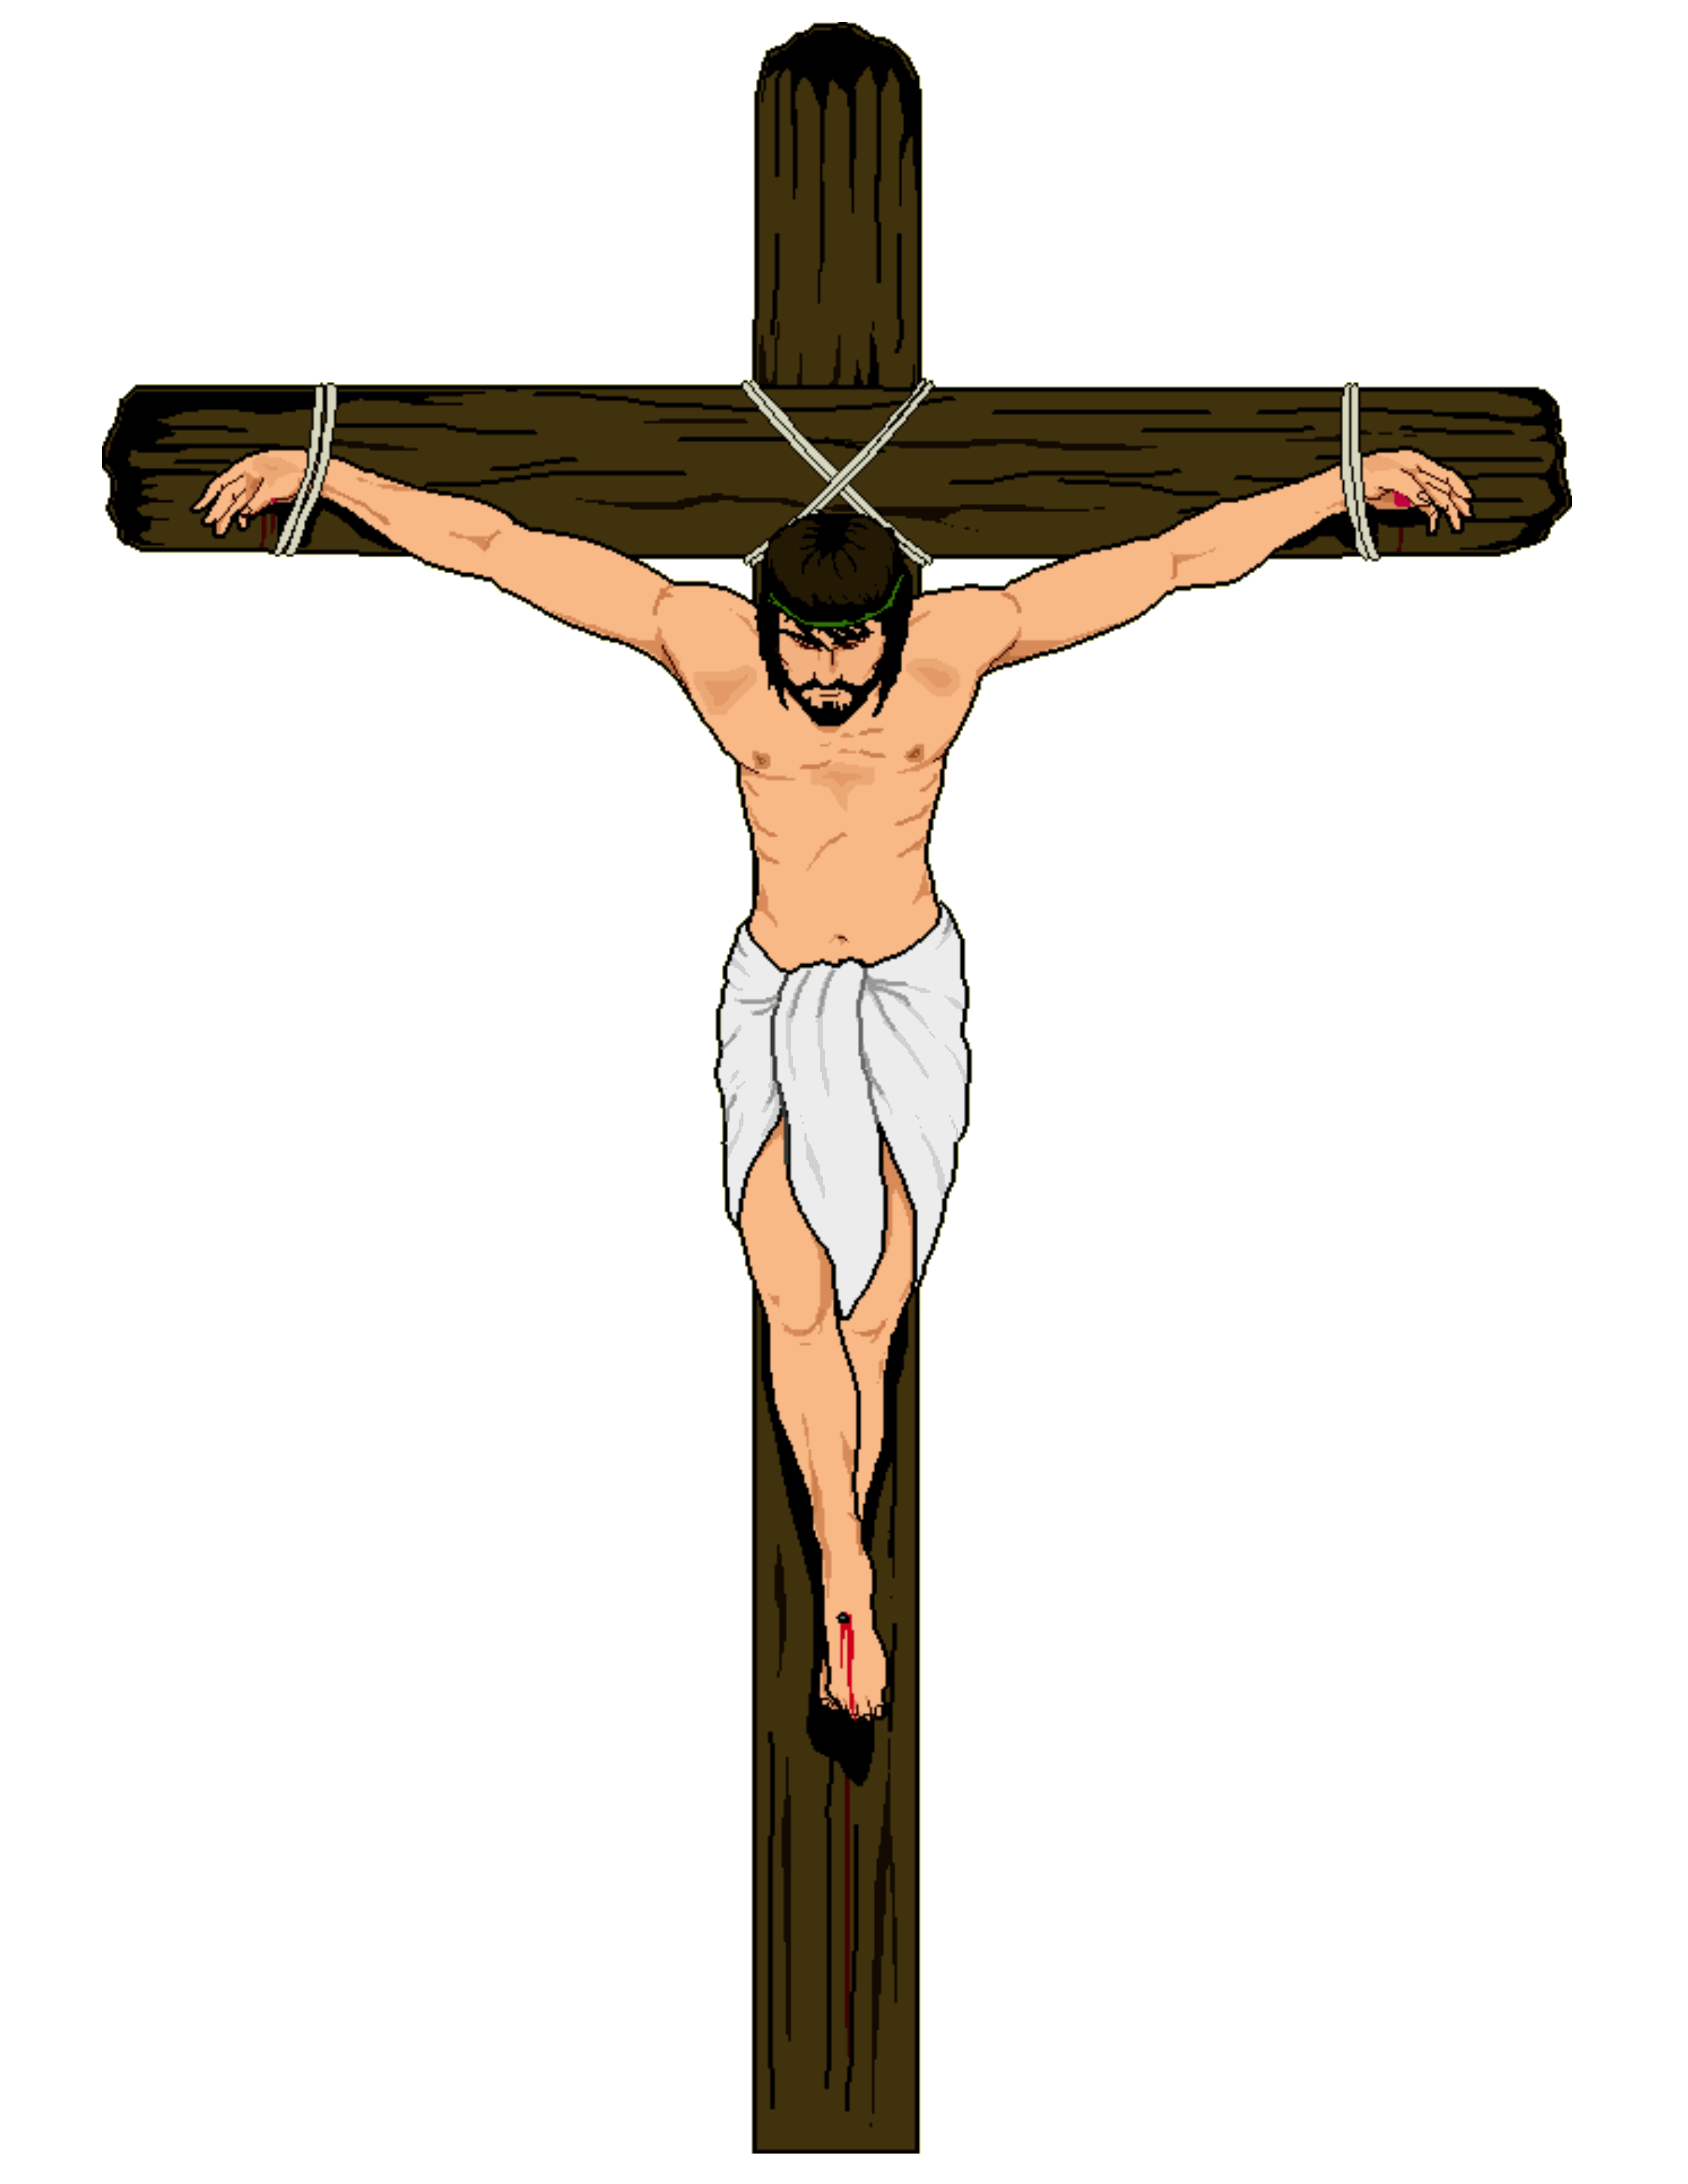 Crucifix clipart dies jesus, Crucifix dies jesus Transparent FREE for